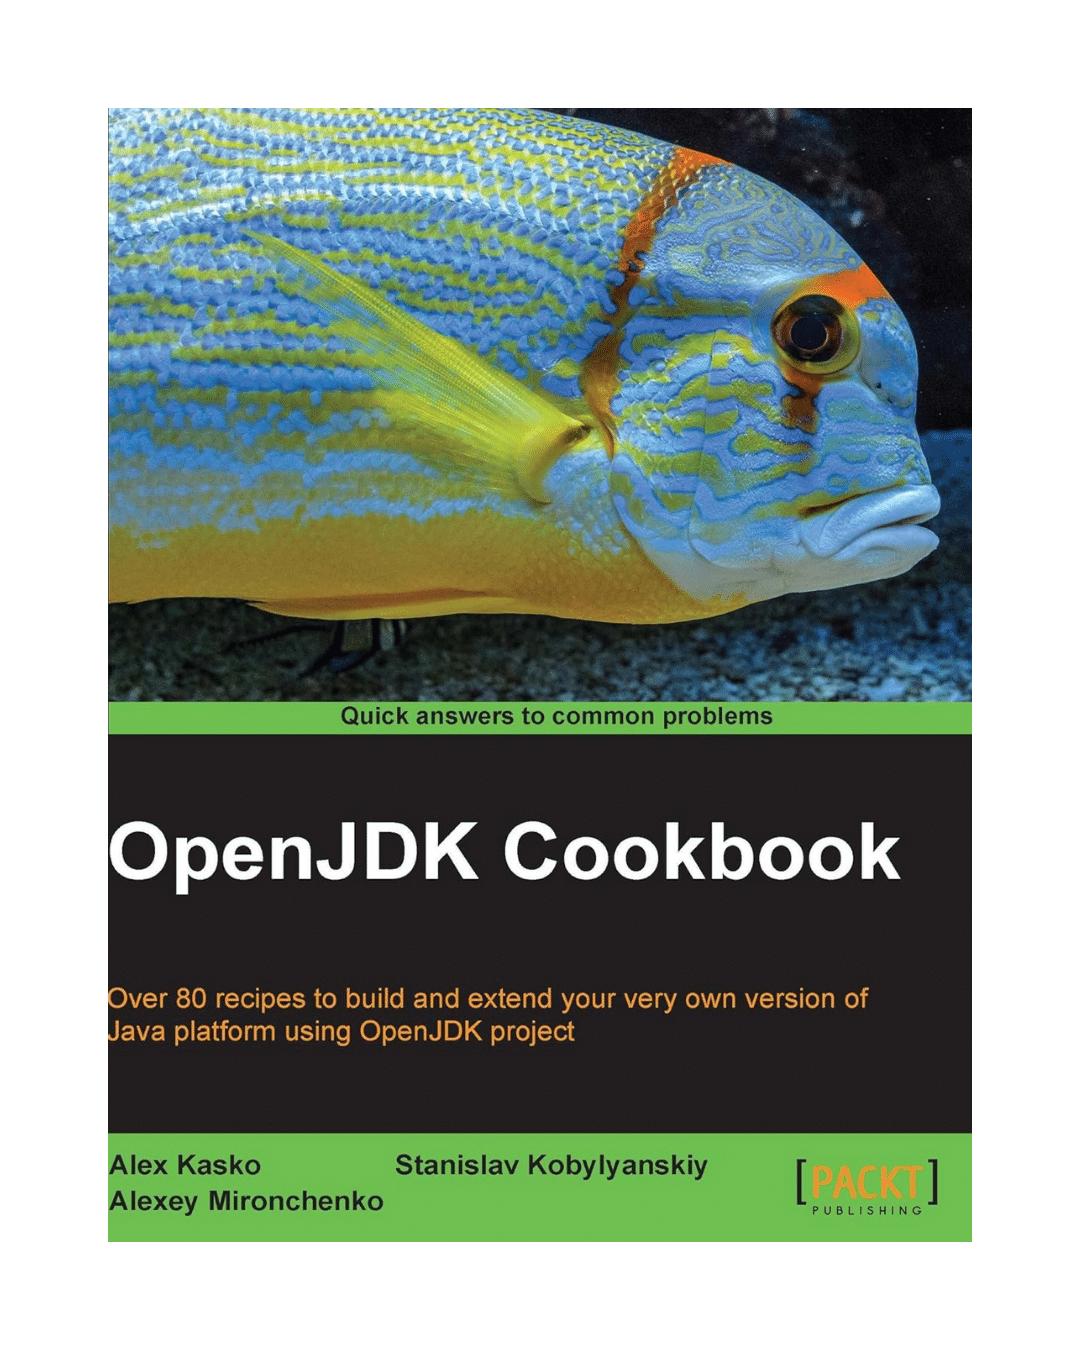 OpenJDK CookBook